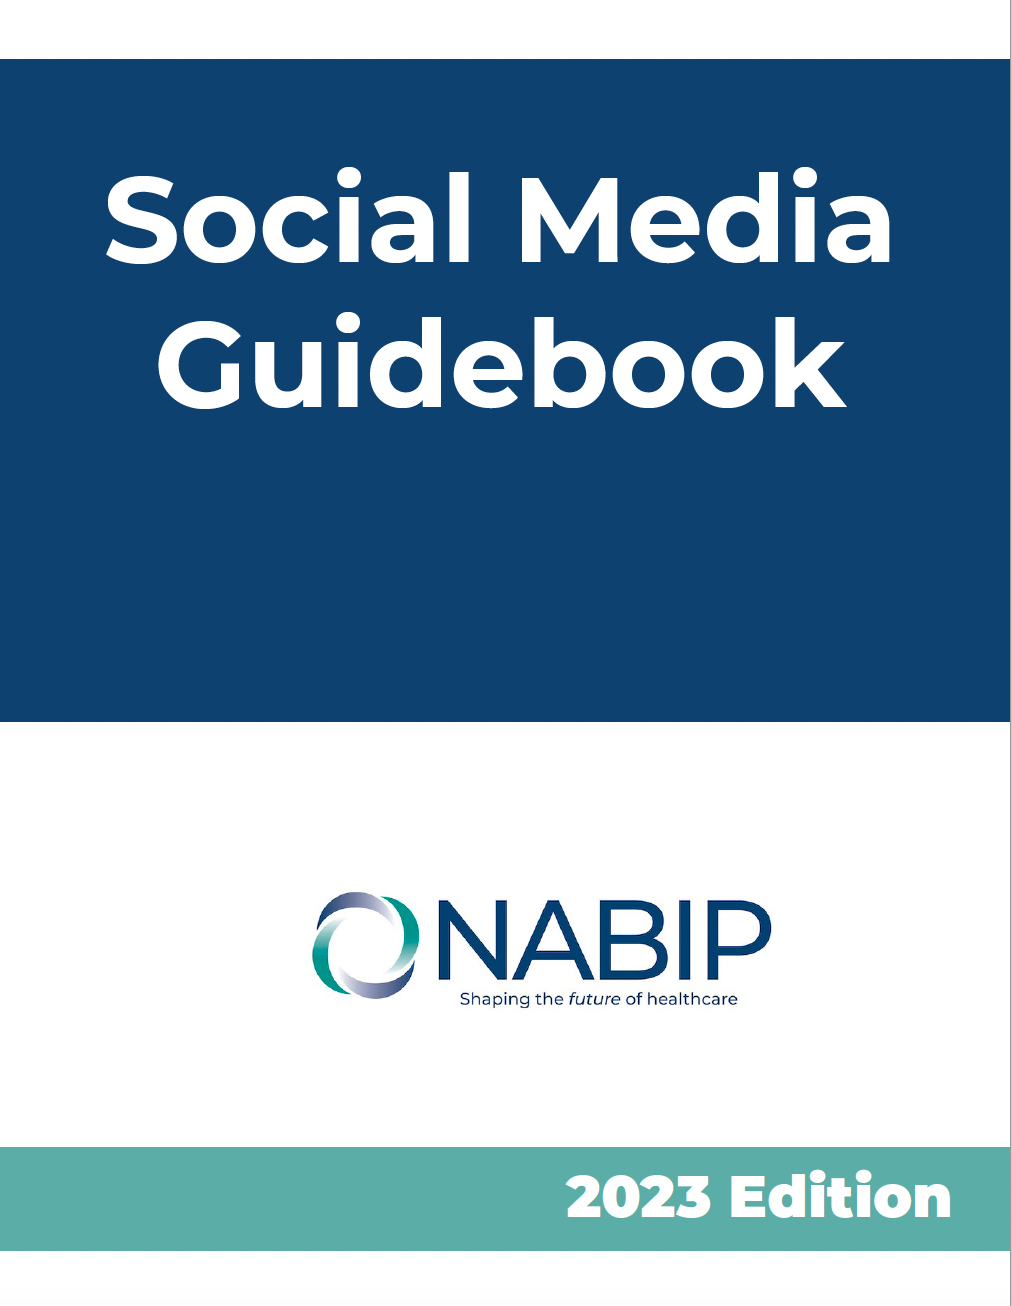 Social Media Guidebook Image